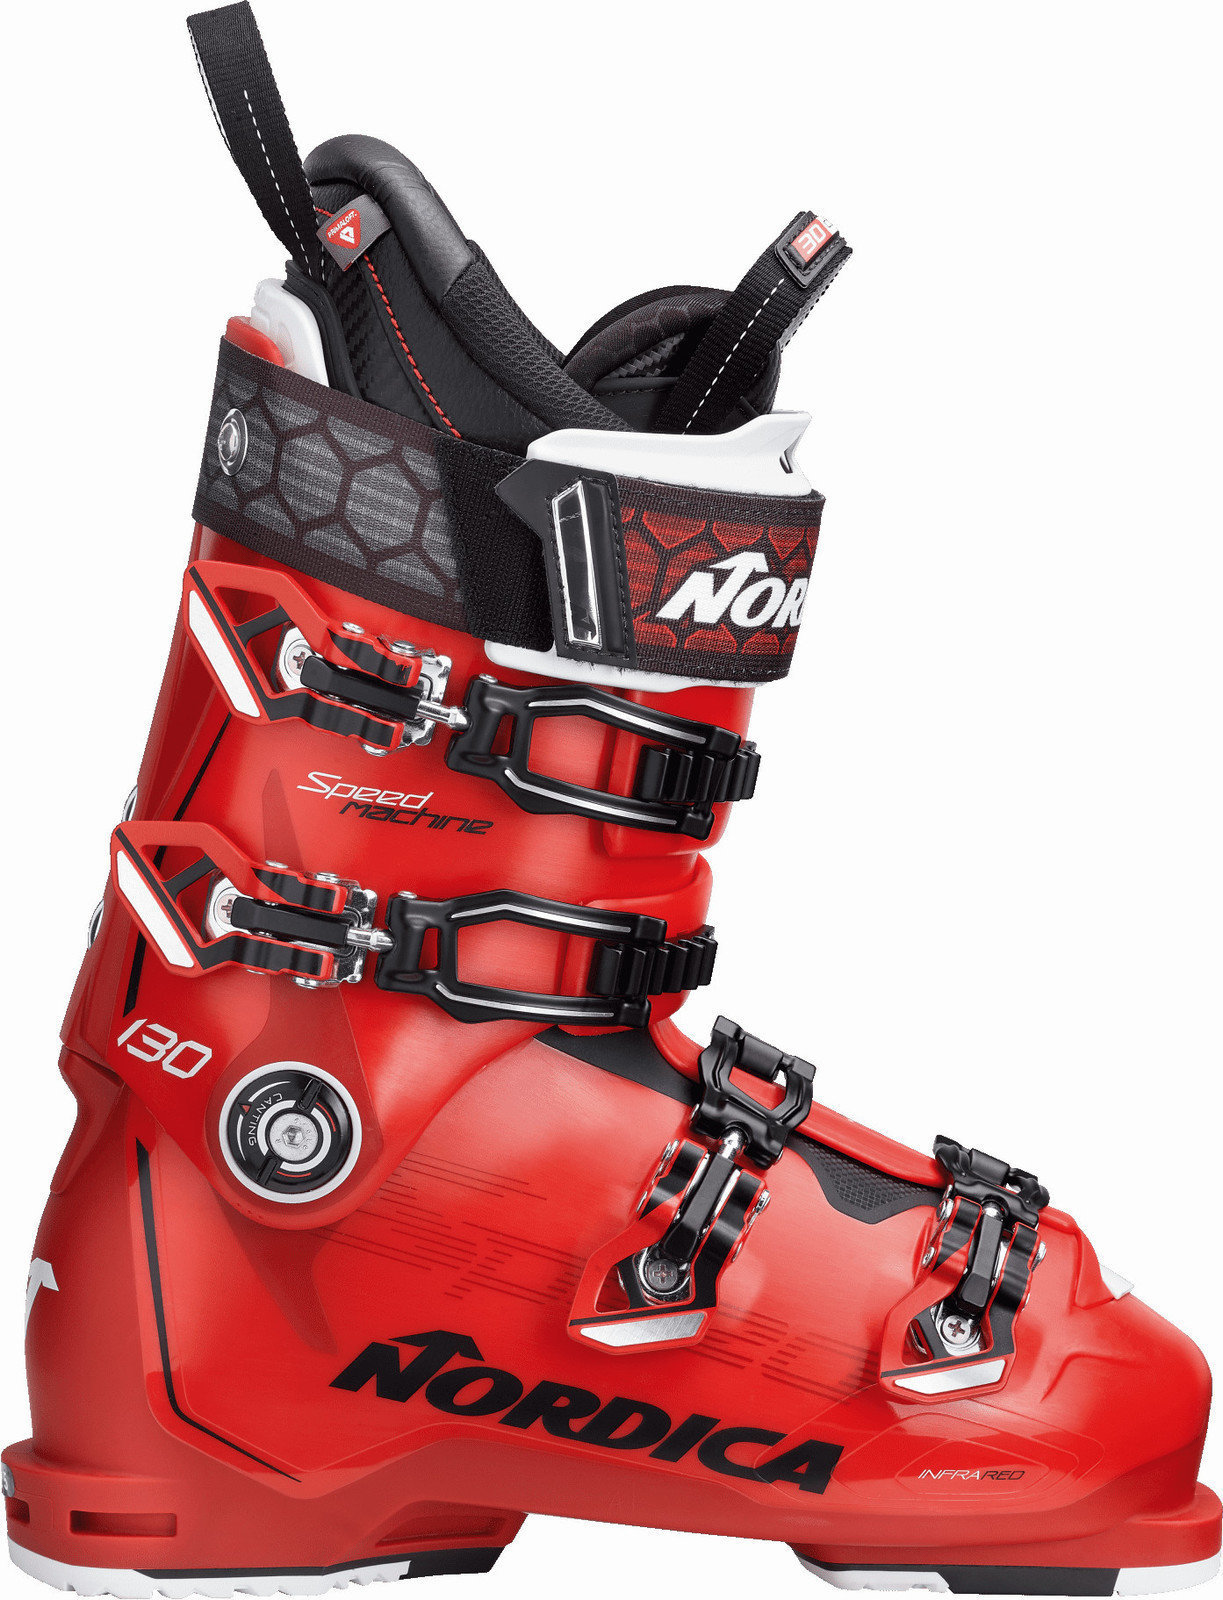 Alpin-Skischuhe Nordica Speedmachine 130 Red-Black-White 29 18/19